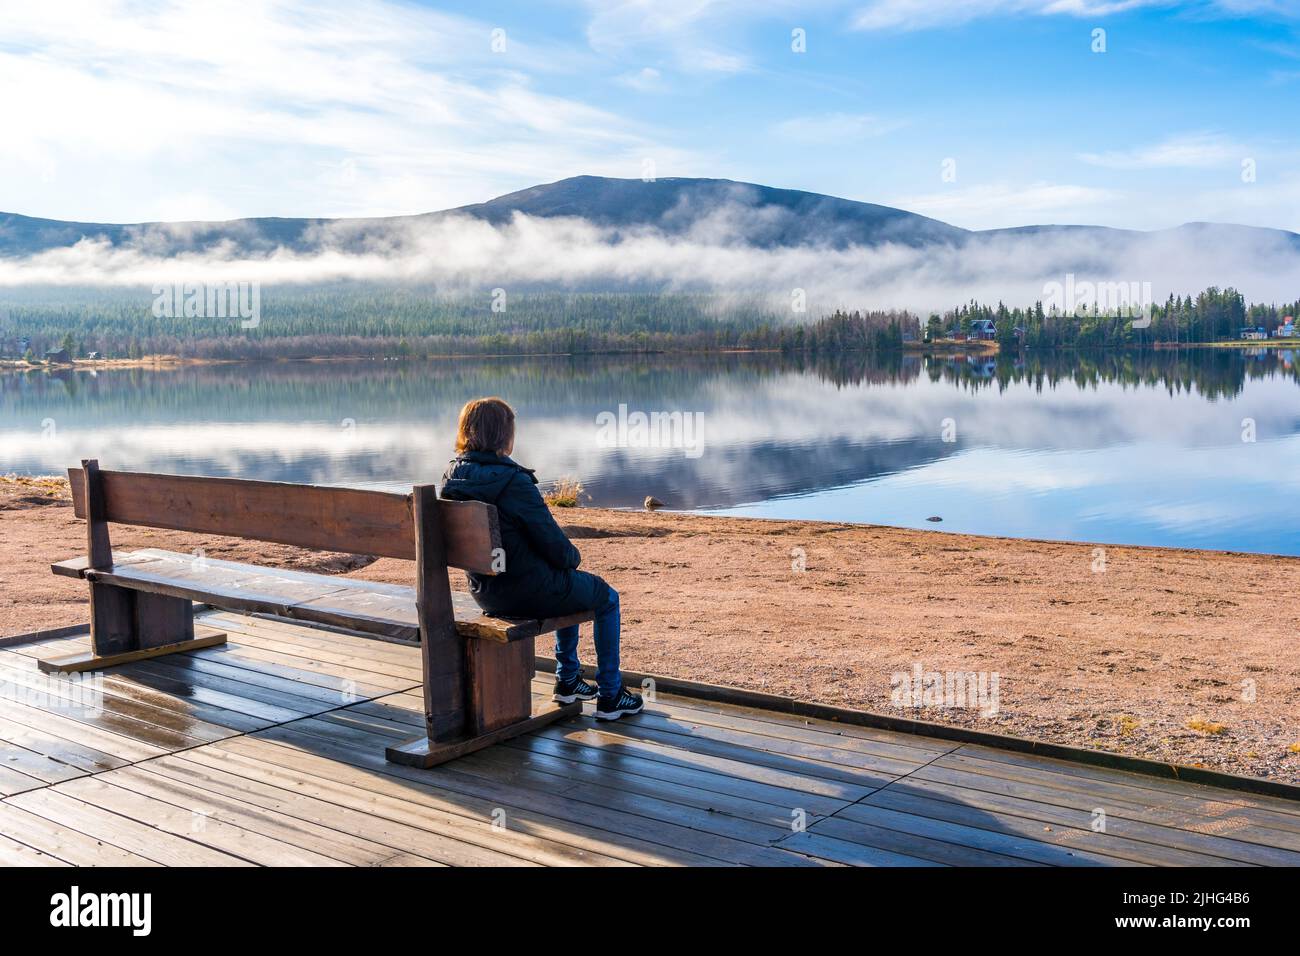 Frau, die auf einer Bank am Strand sitzt und die schöne Aussicht auf Berg und Fluss beobachtet, Gällivare, Schwedisch Lappland, Schweden Stockfoto